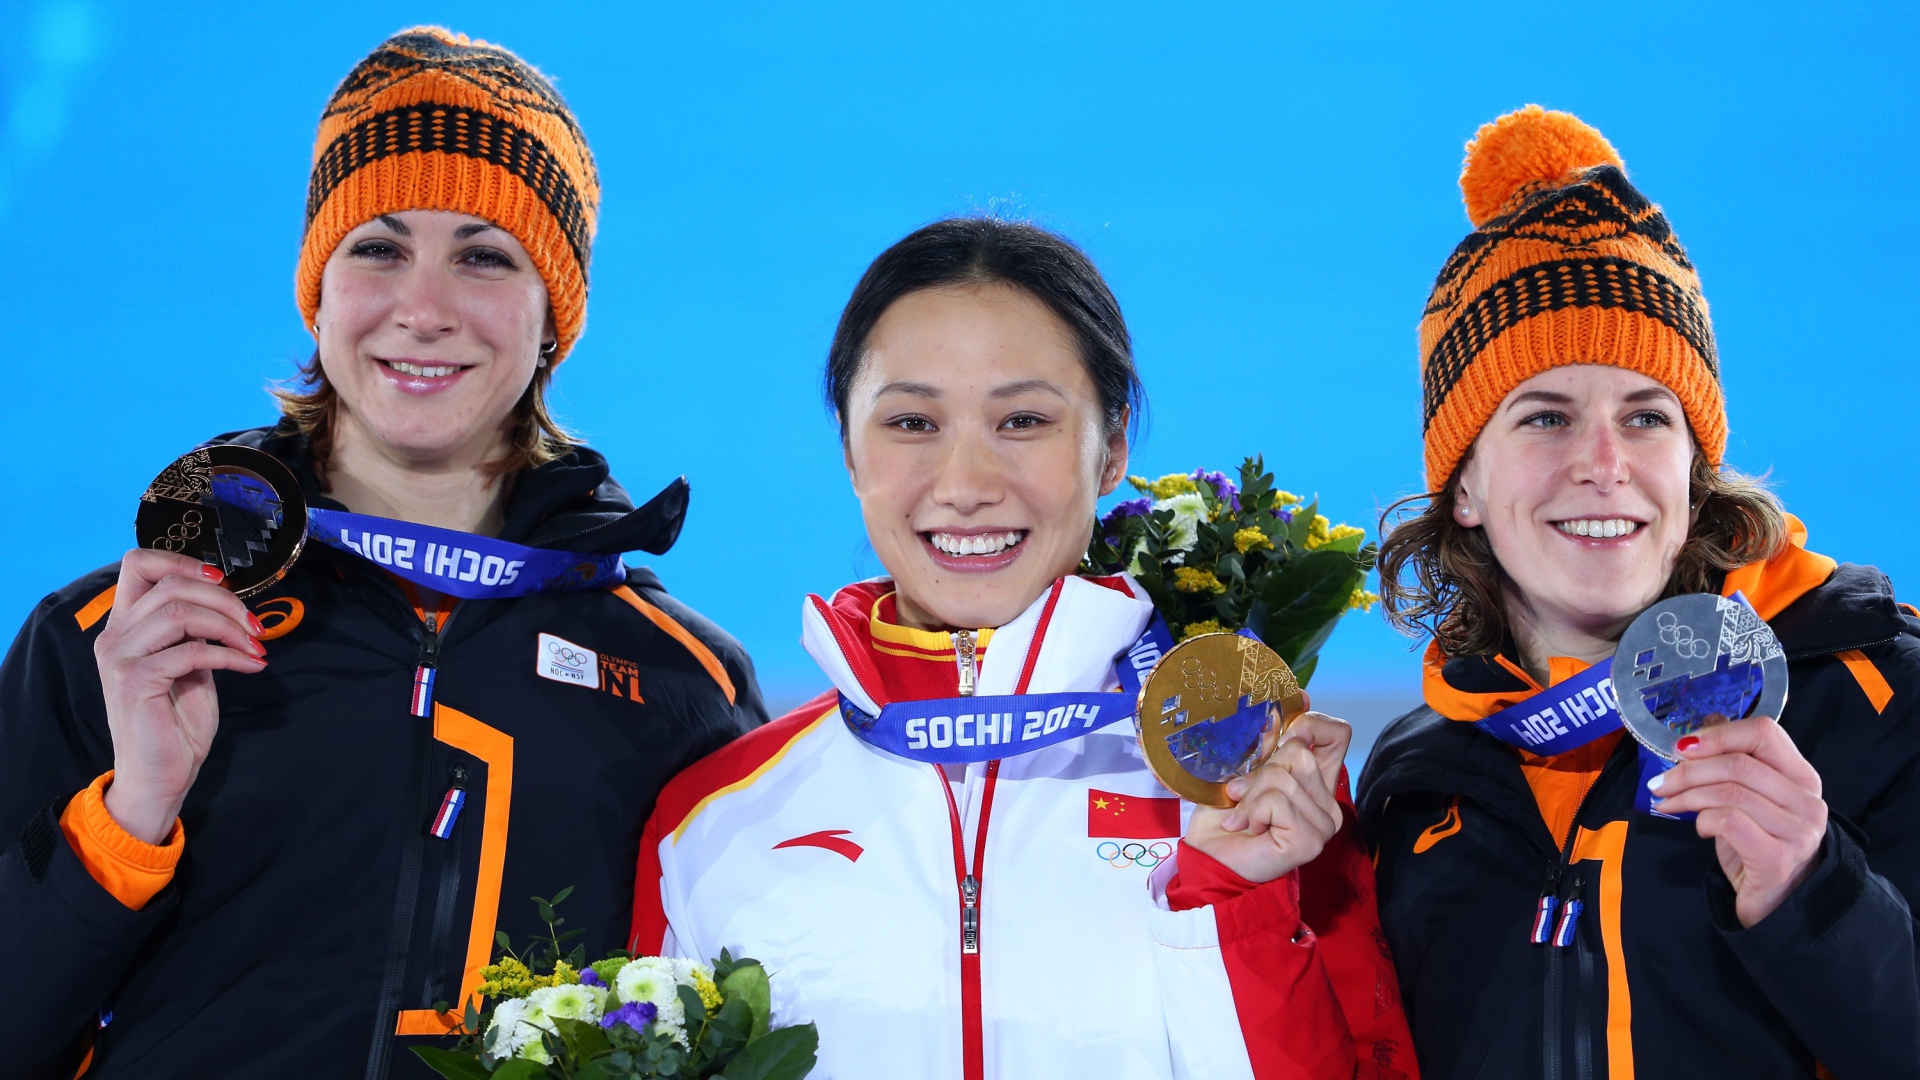 Обладательница двух бронзовых медалей в дисциплине скоростной бег на коньках Маргот Бур из Нидерландов